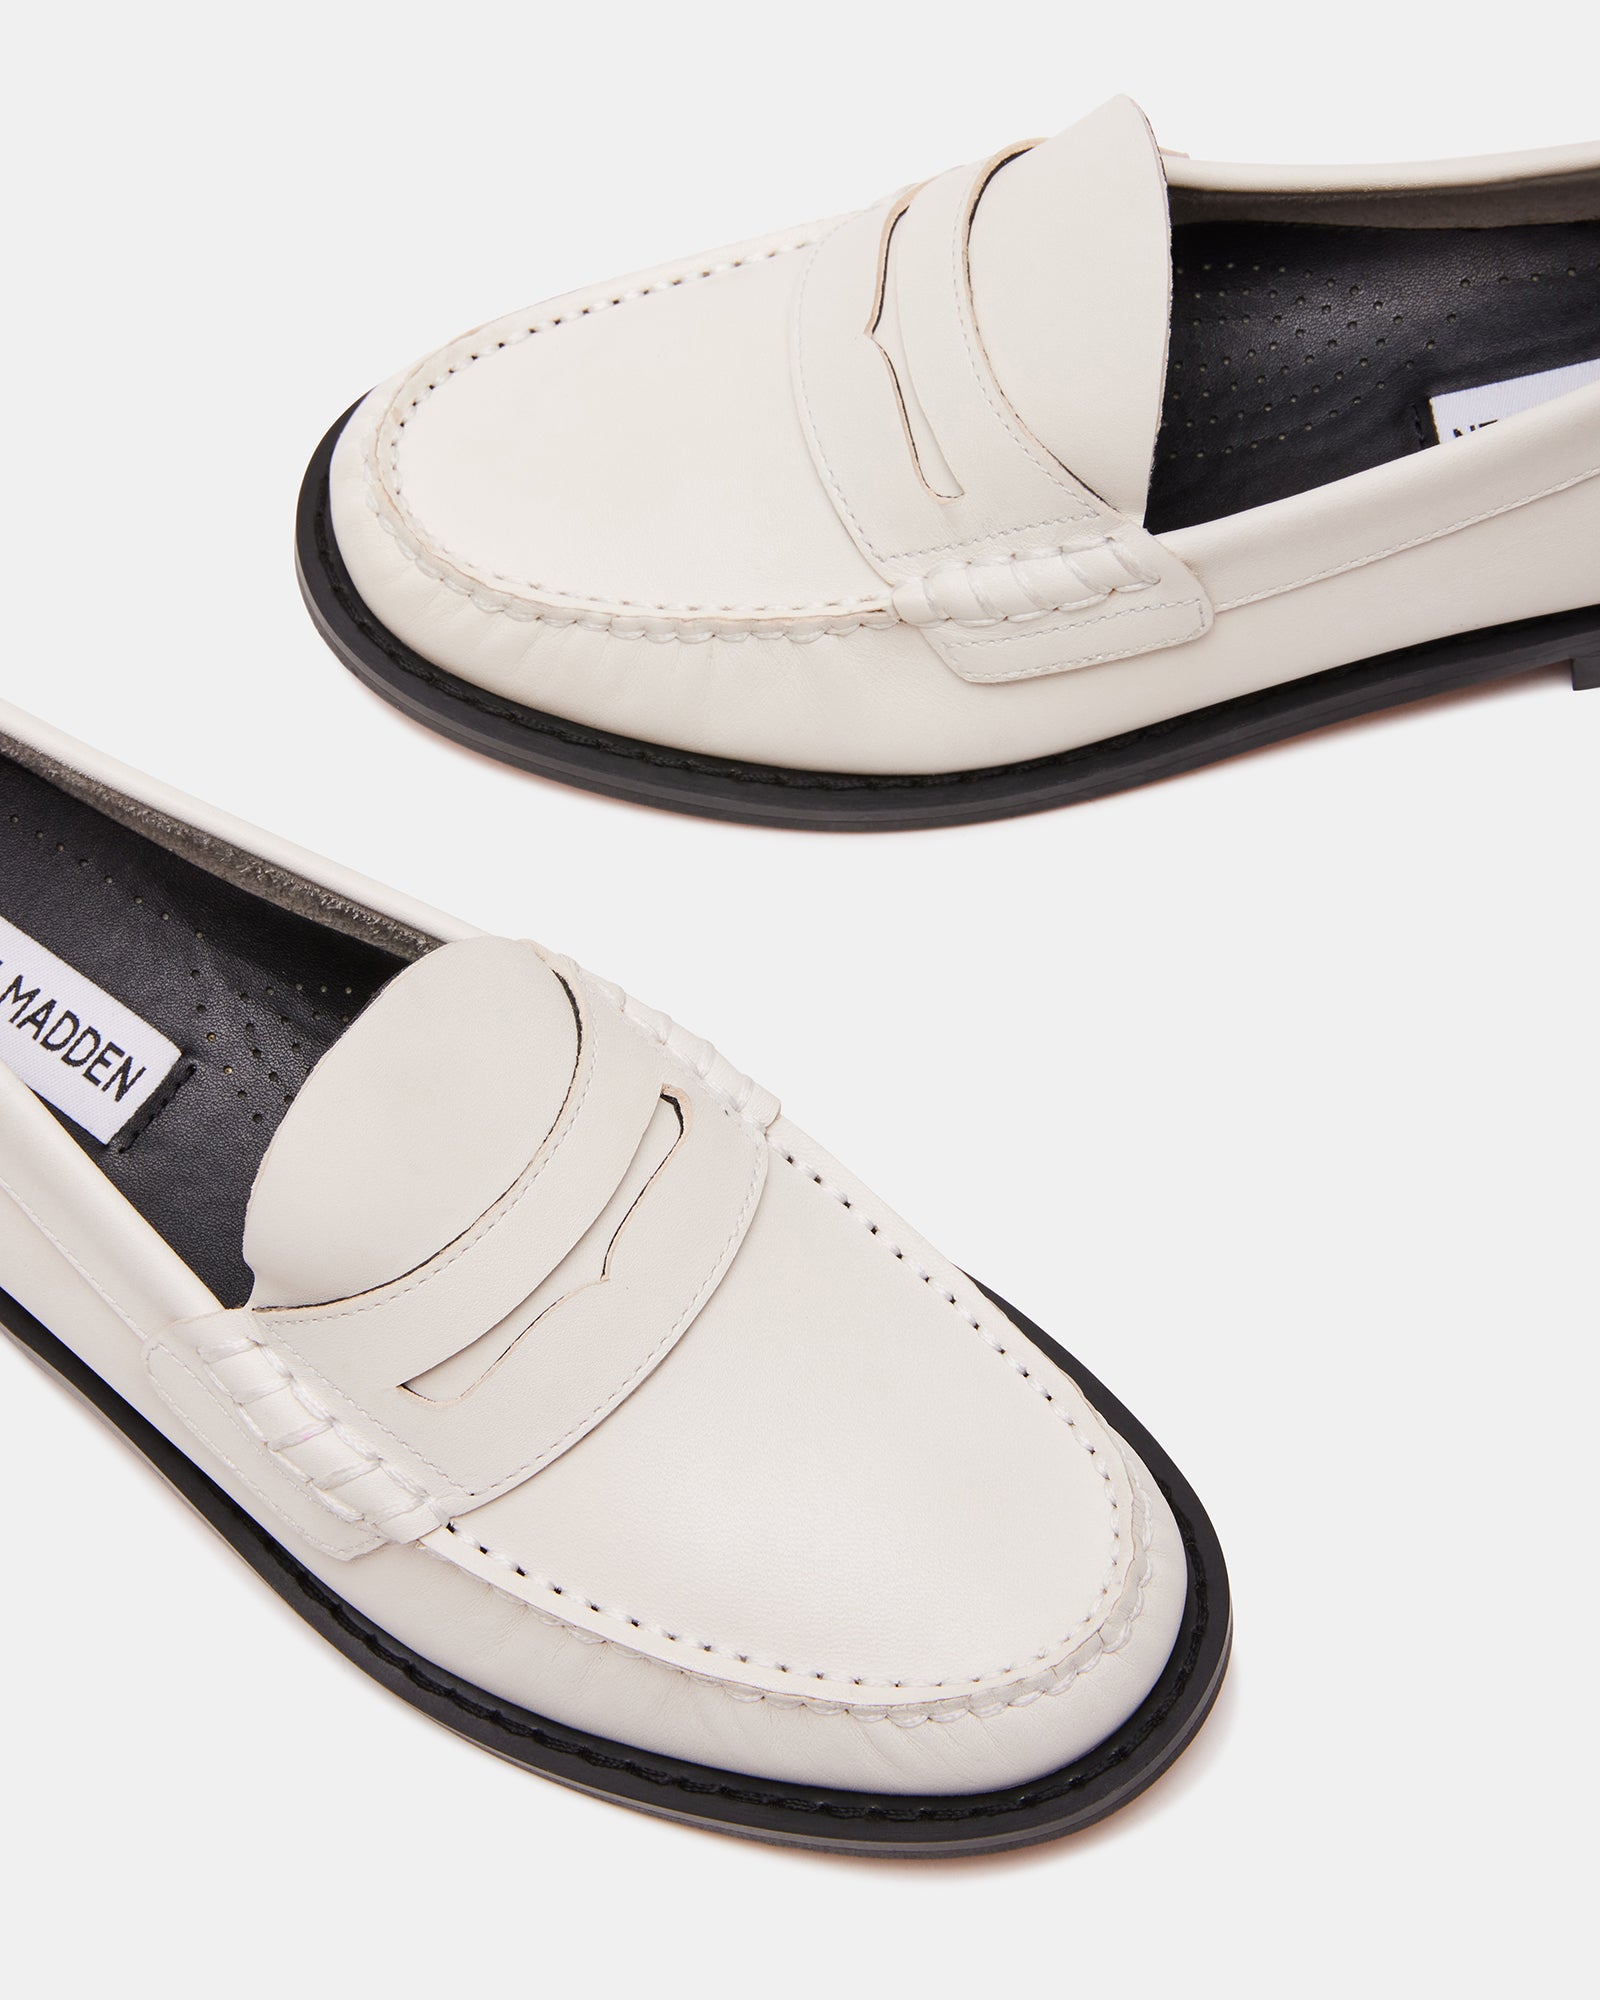 KINGSTON White Leather Slip On Loafer | Women's Loafers – Steve Madden